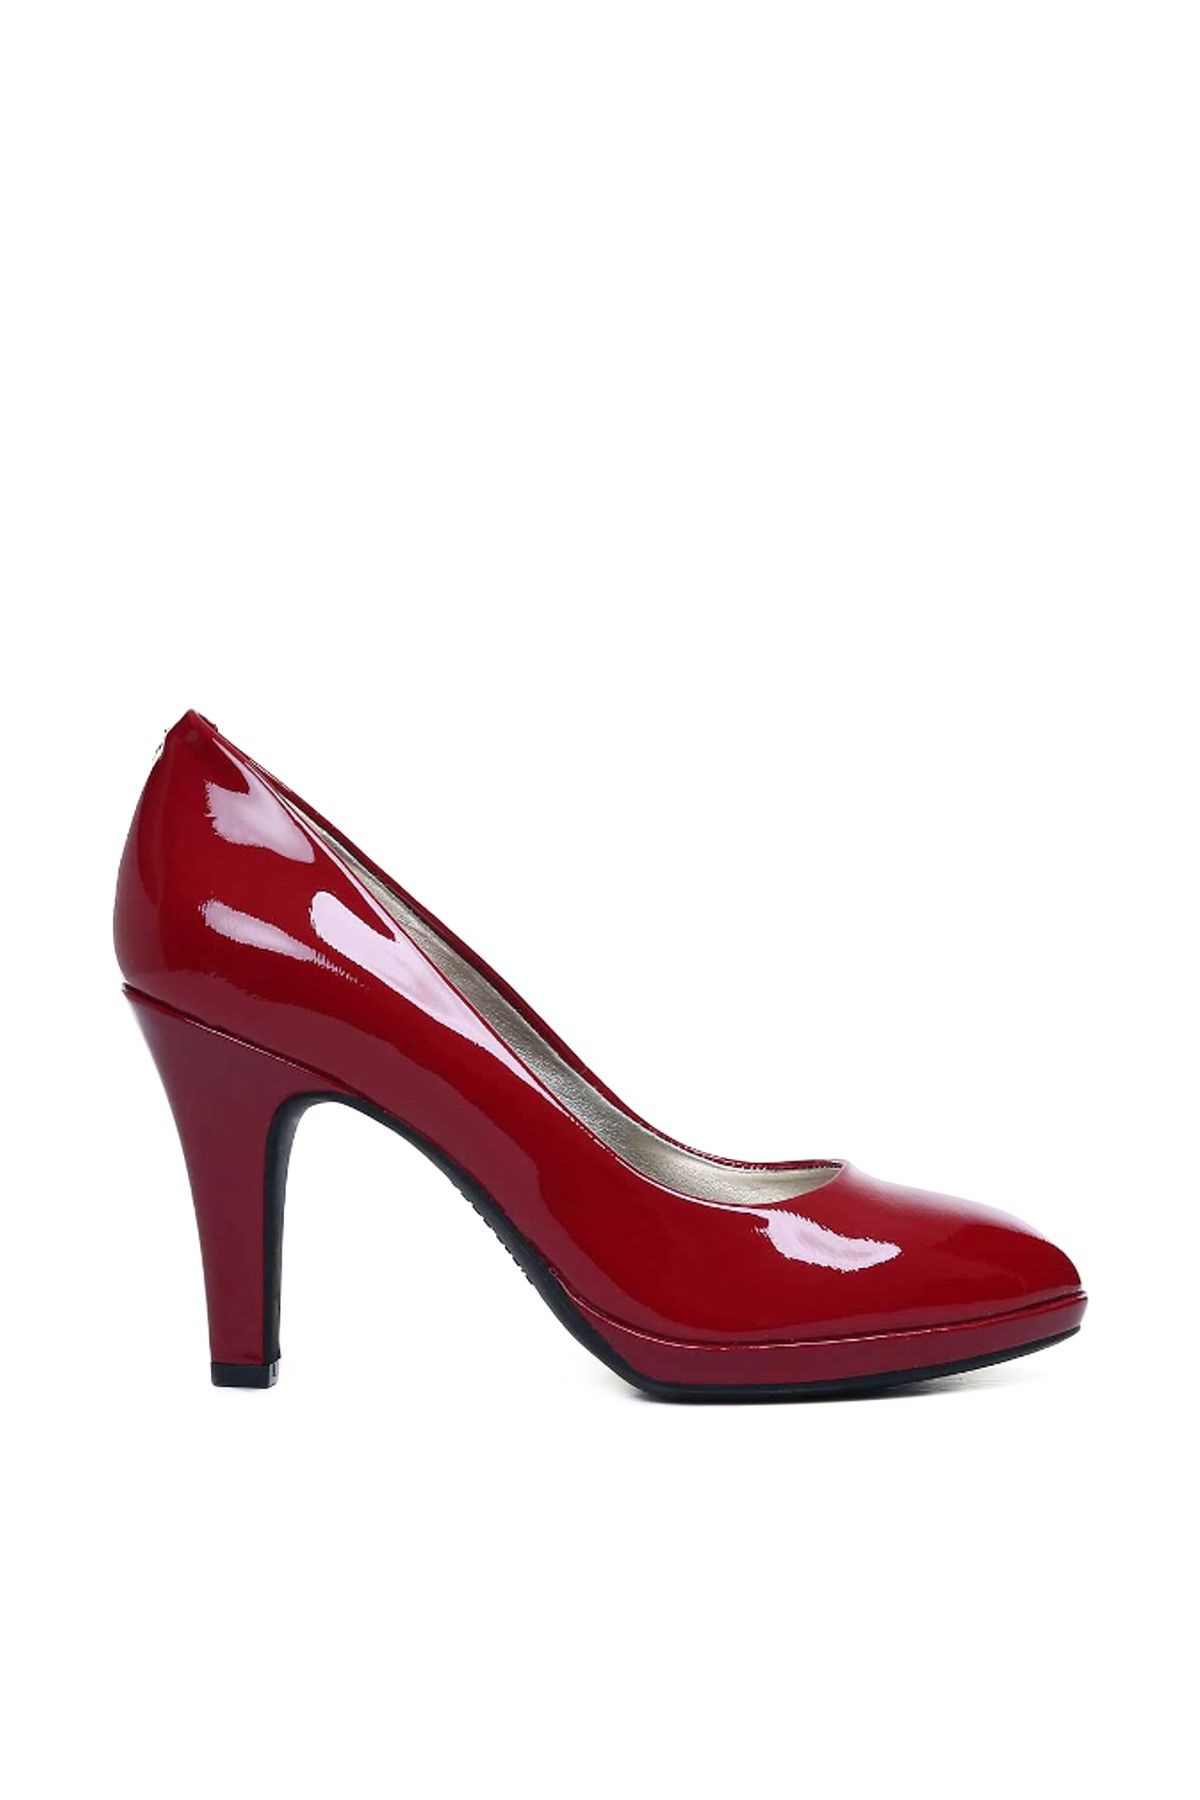 ANNE KLEİN Kırmızı Kadın Topuklu Ayakkabı 25020070-1AB